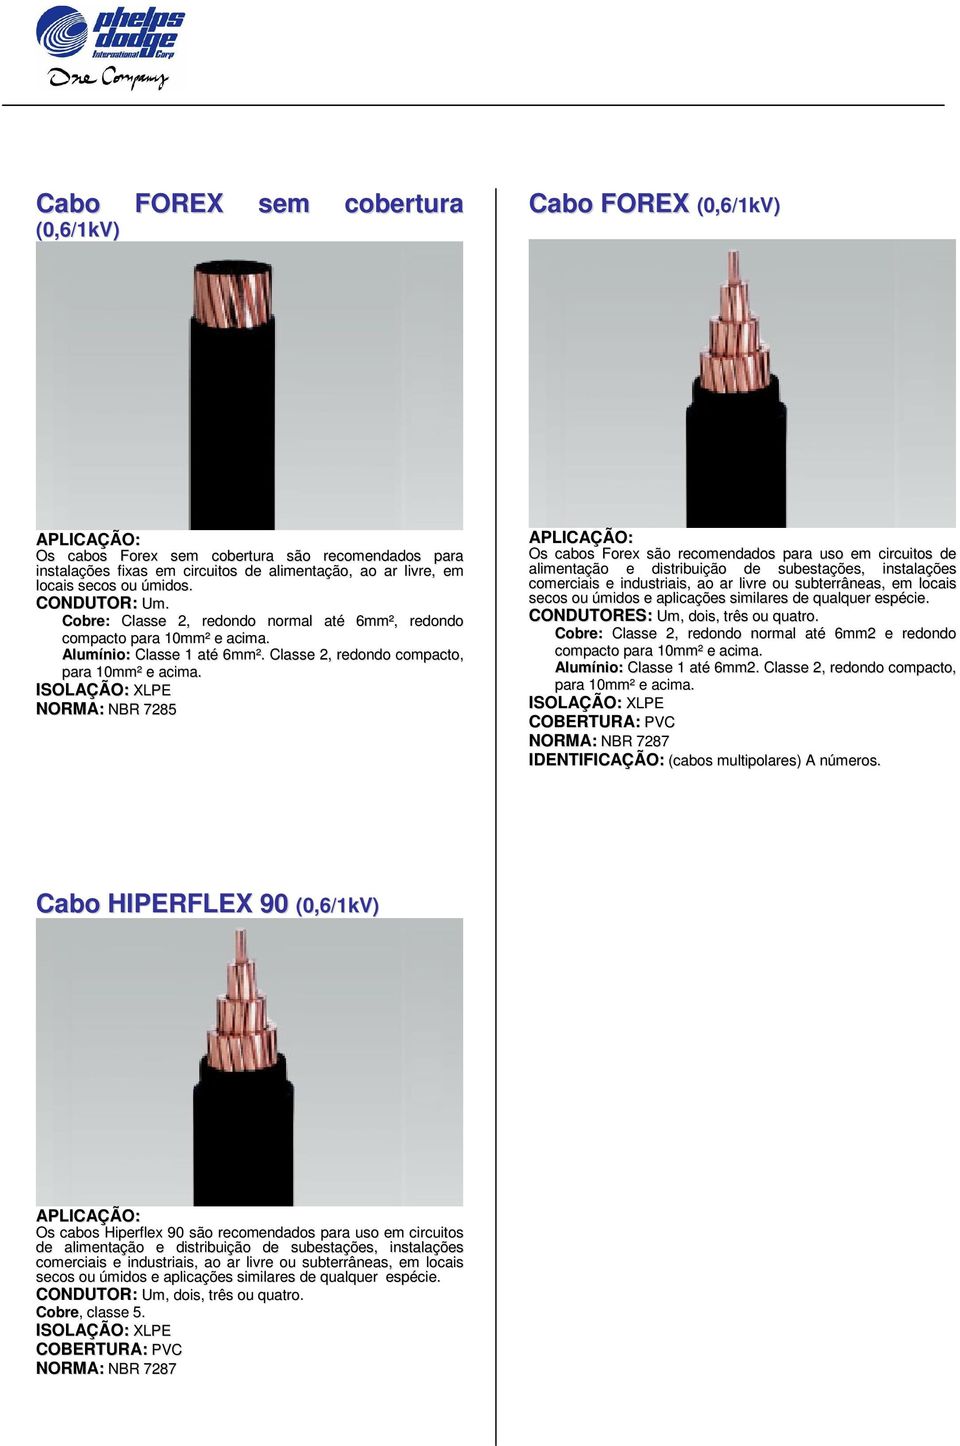 ISOLAÇÃO: XLPE NORMA: NBR 7285 Os cabos Forex são recomendados para uso em circuitos de alimentação e distribuição de subestações, instalações CONDUTORES: Um, dois, três ou quatro.